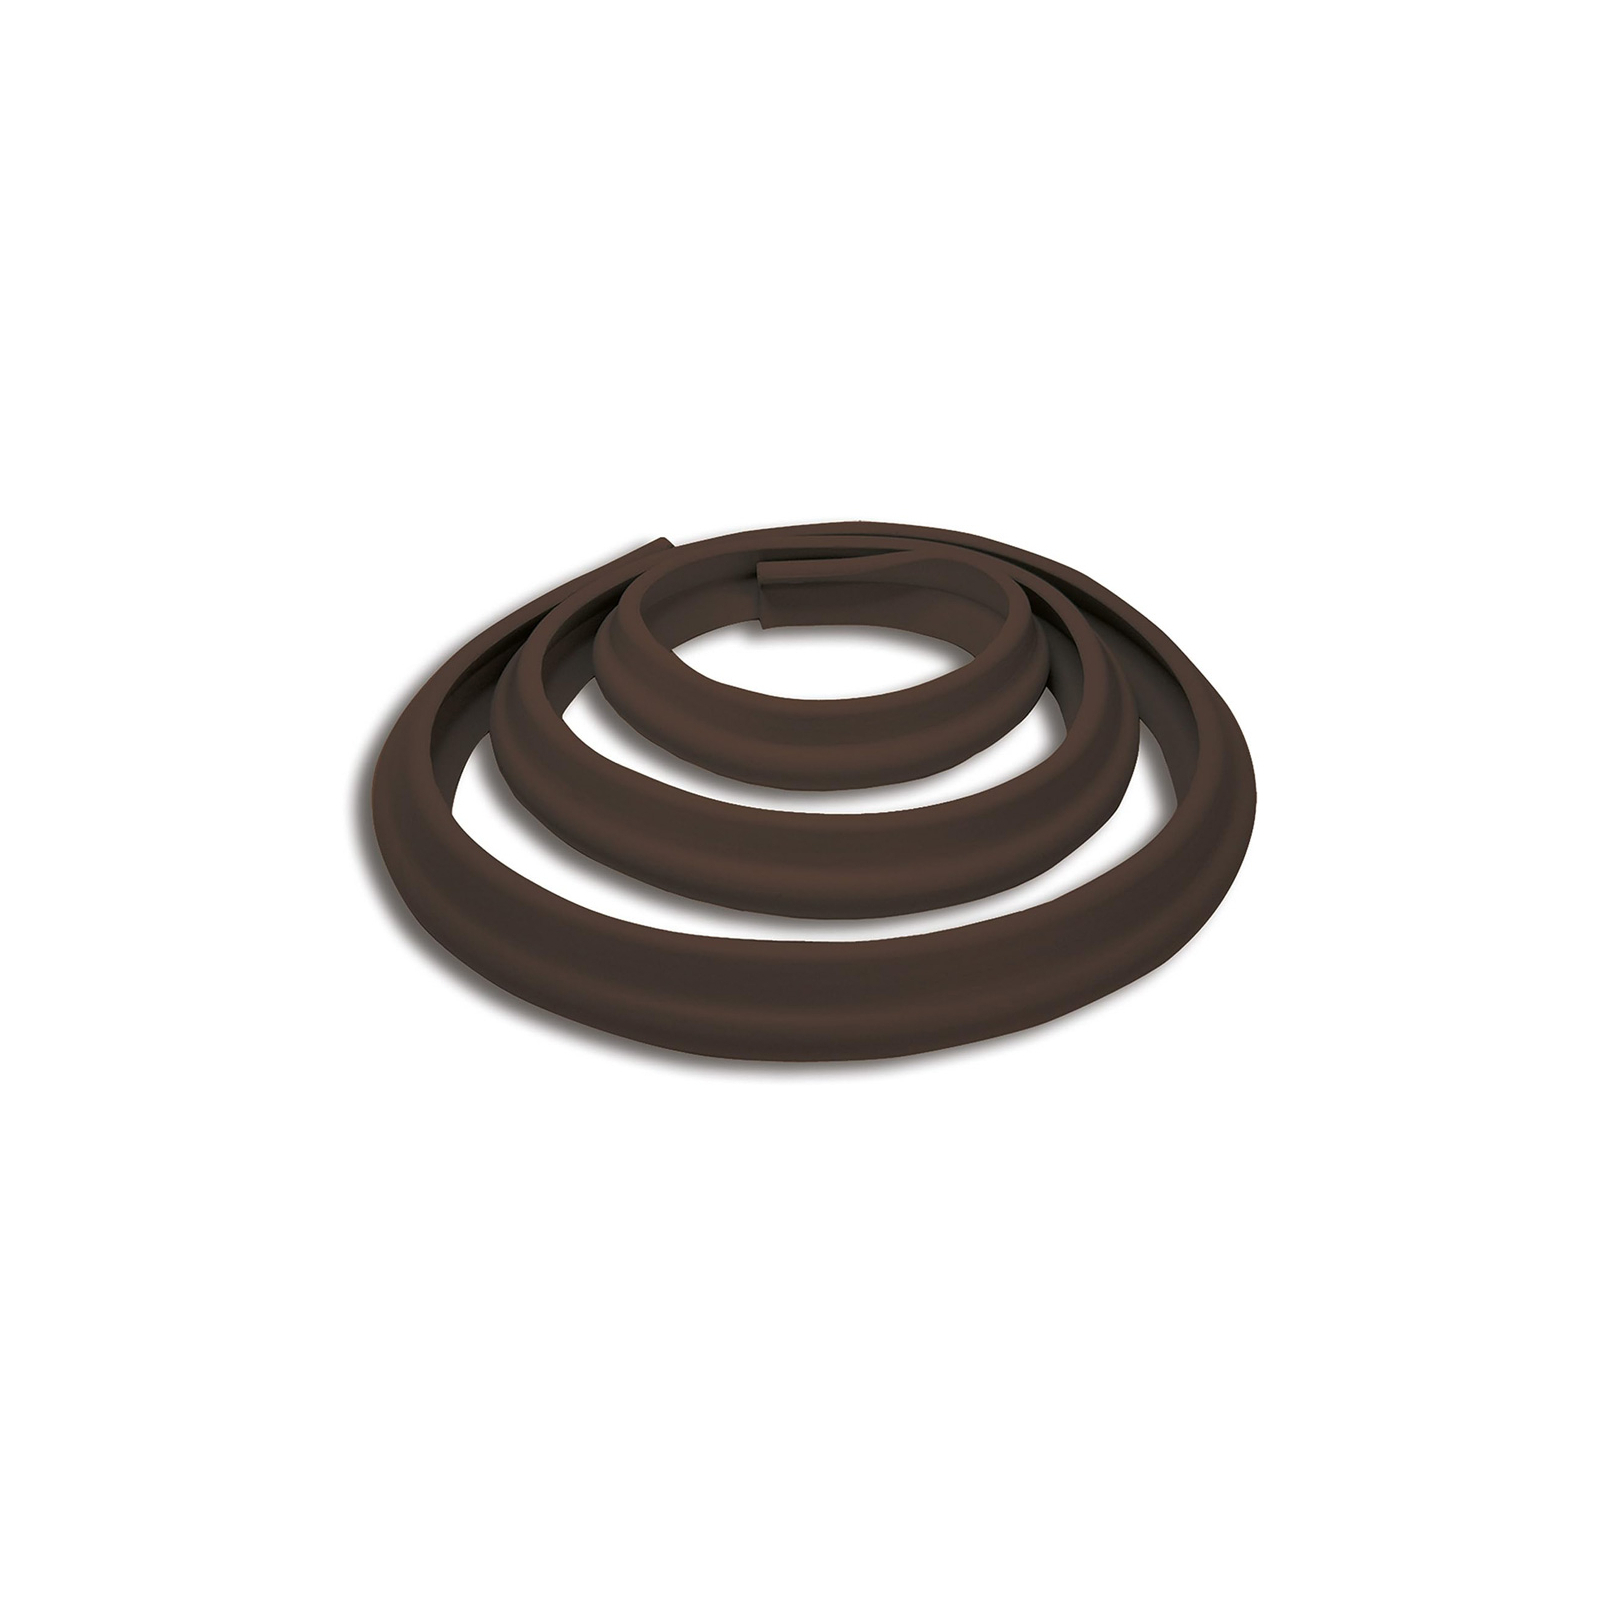 Защита на углы DreamBaby защитная лента на острые углы мебели 2 м, коричневая (G815) изображение 4